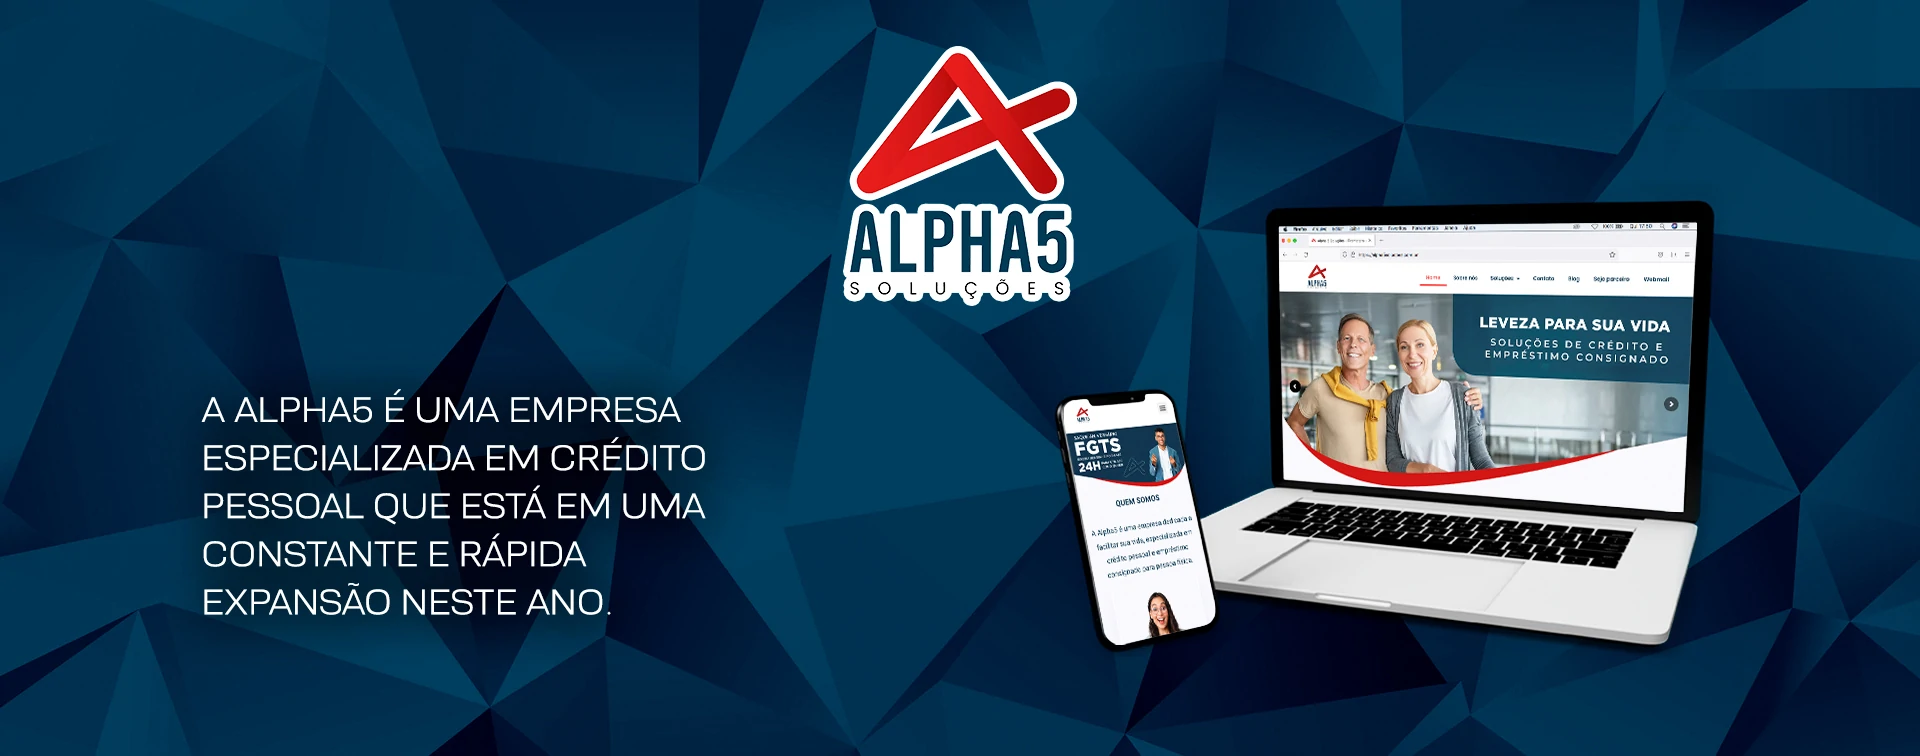 Alpha5-solucoes-Cliente-Agencia-Davs-Marketing-Digital-em-Fortaleza-1